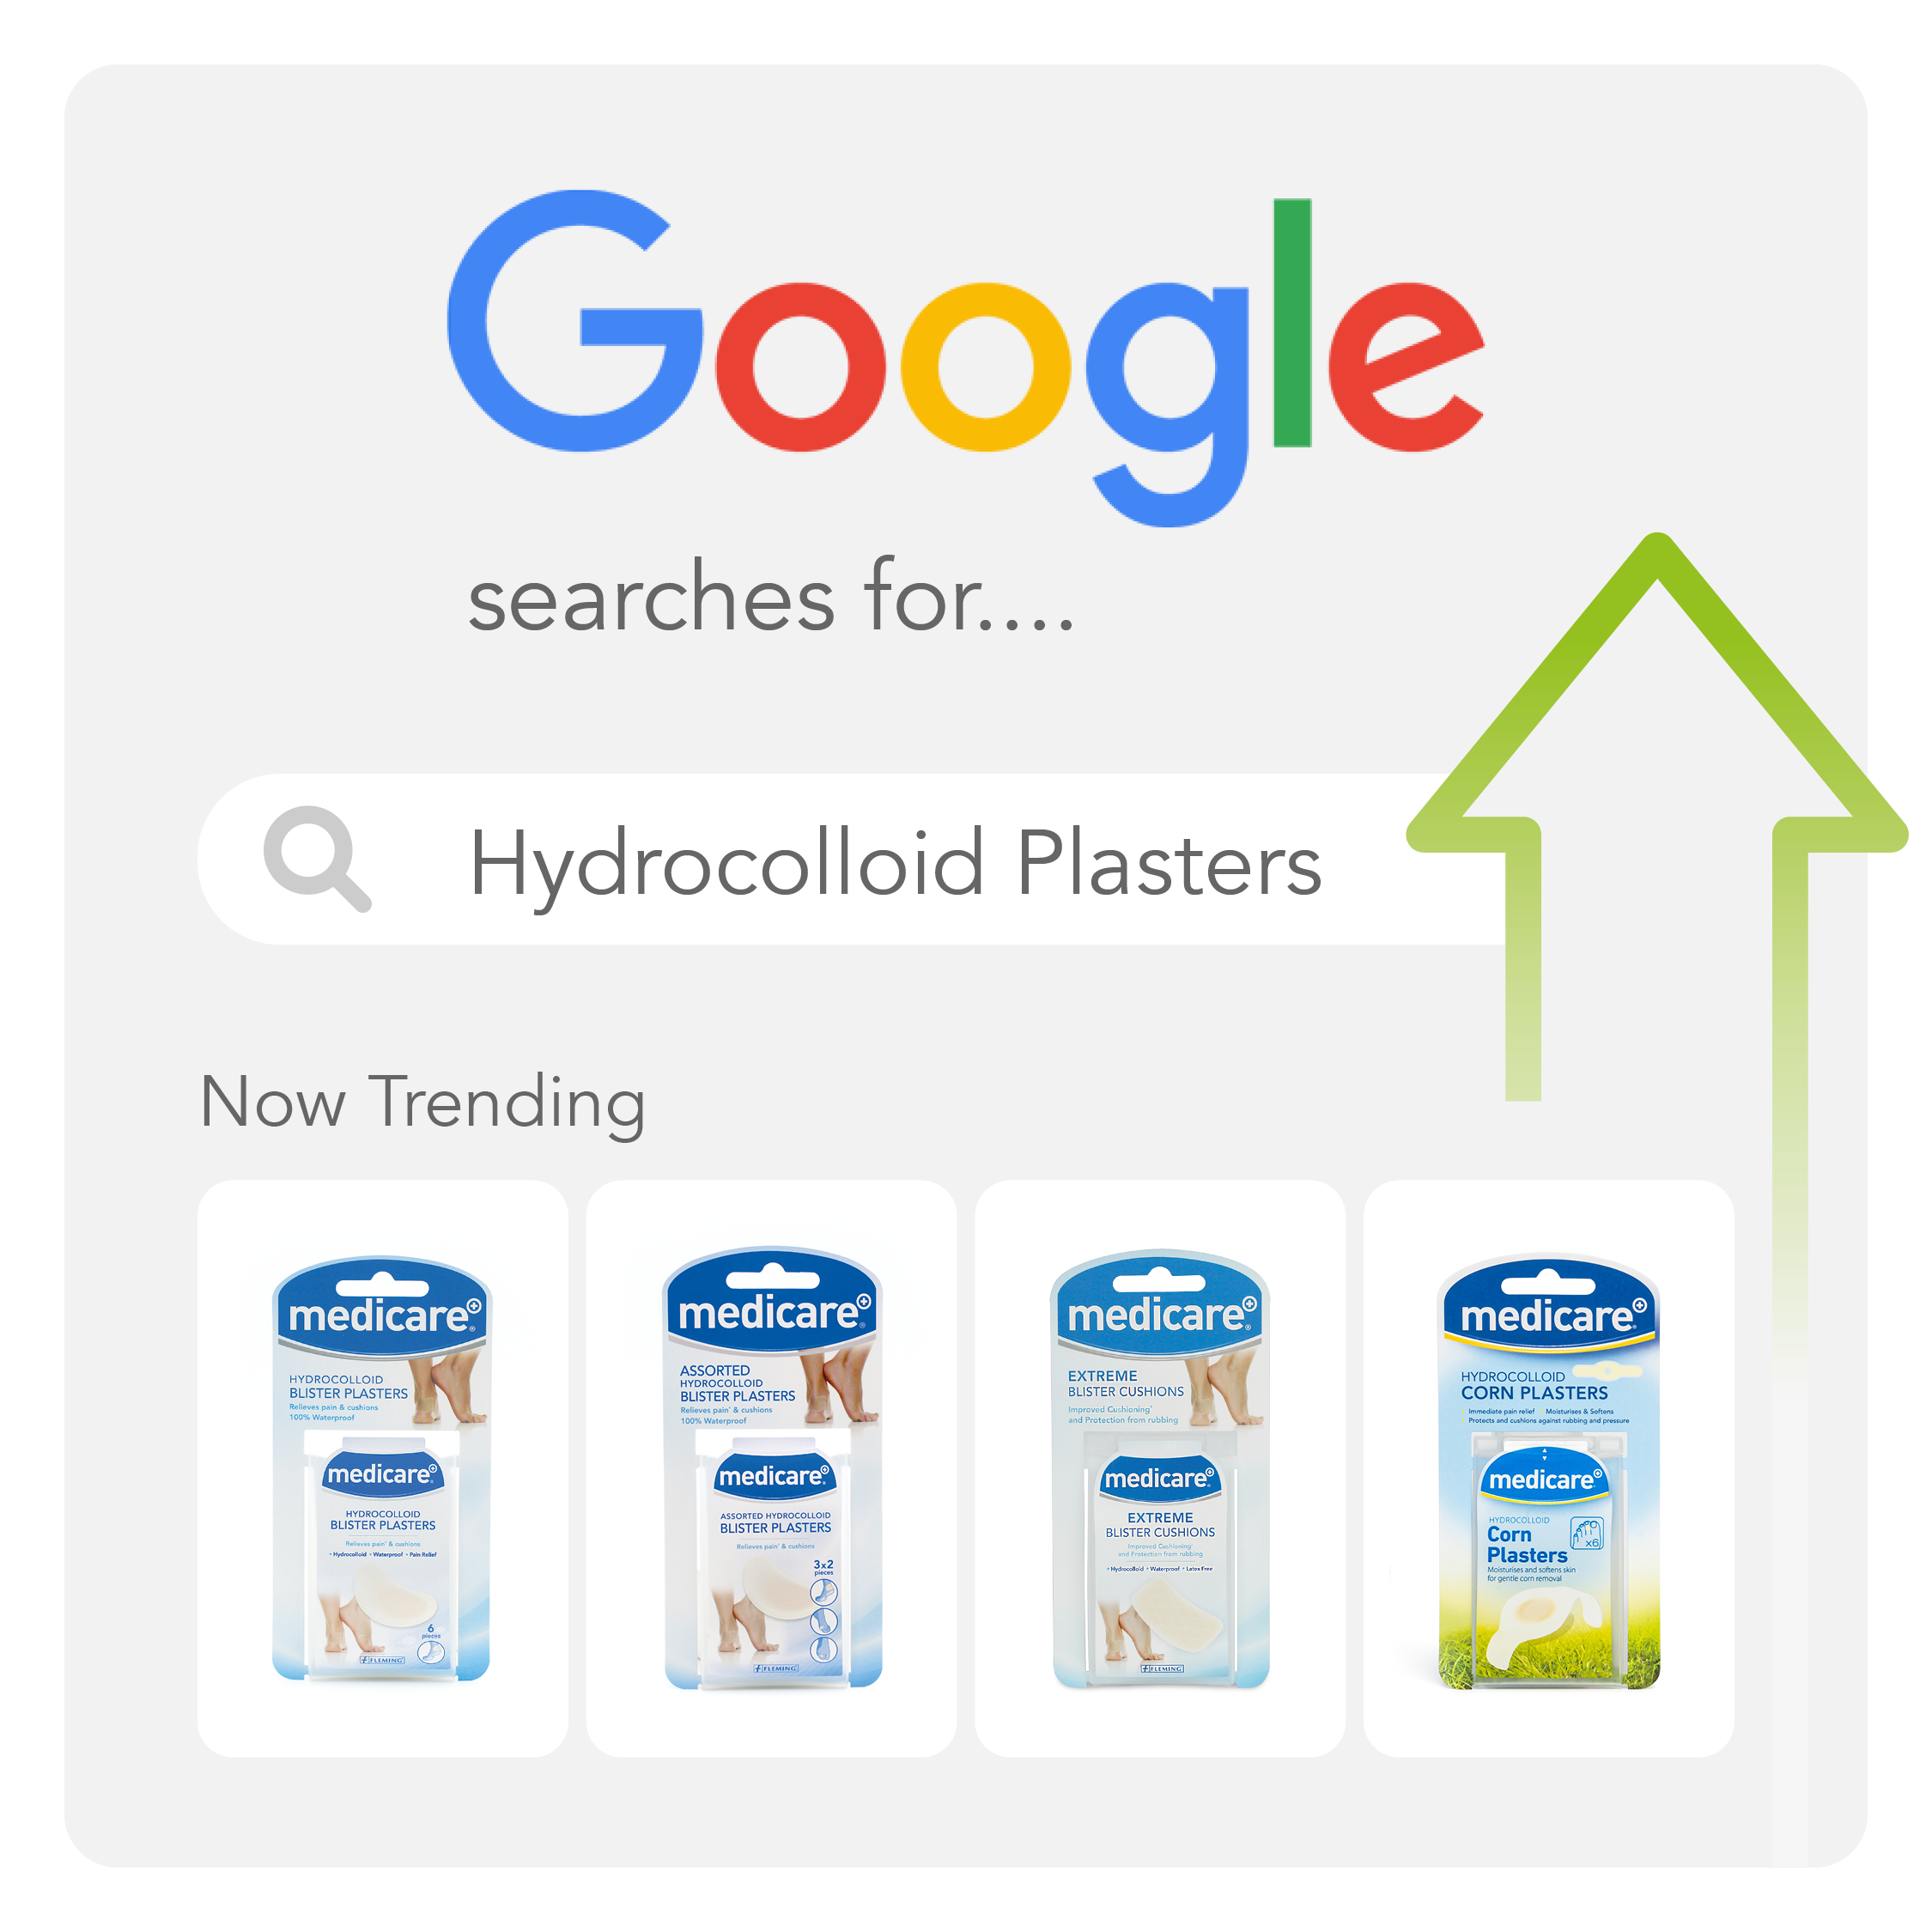 Hydrocolloid Blister Plaster Trending